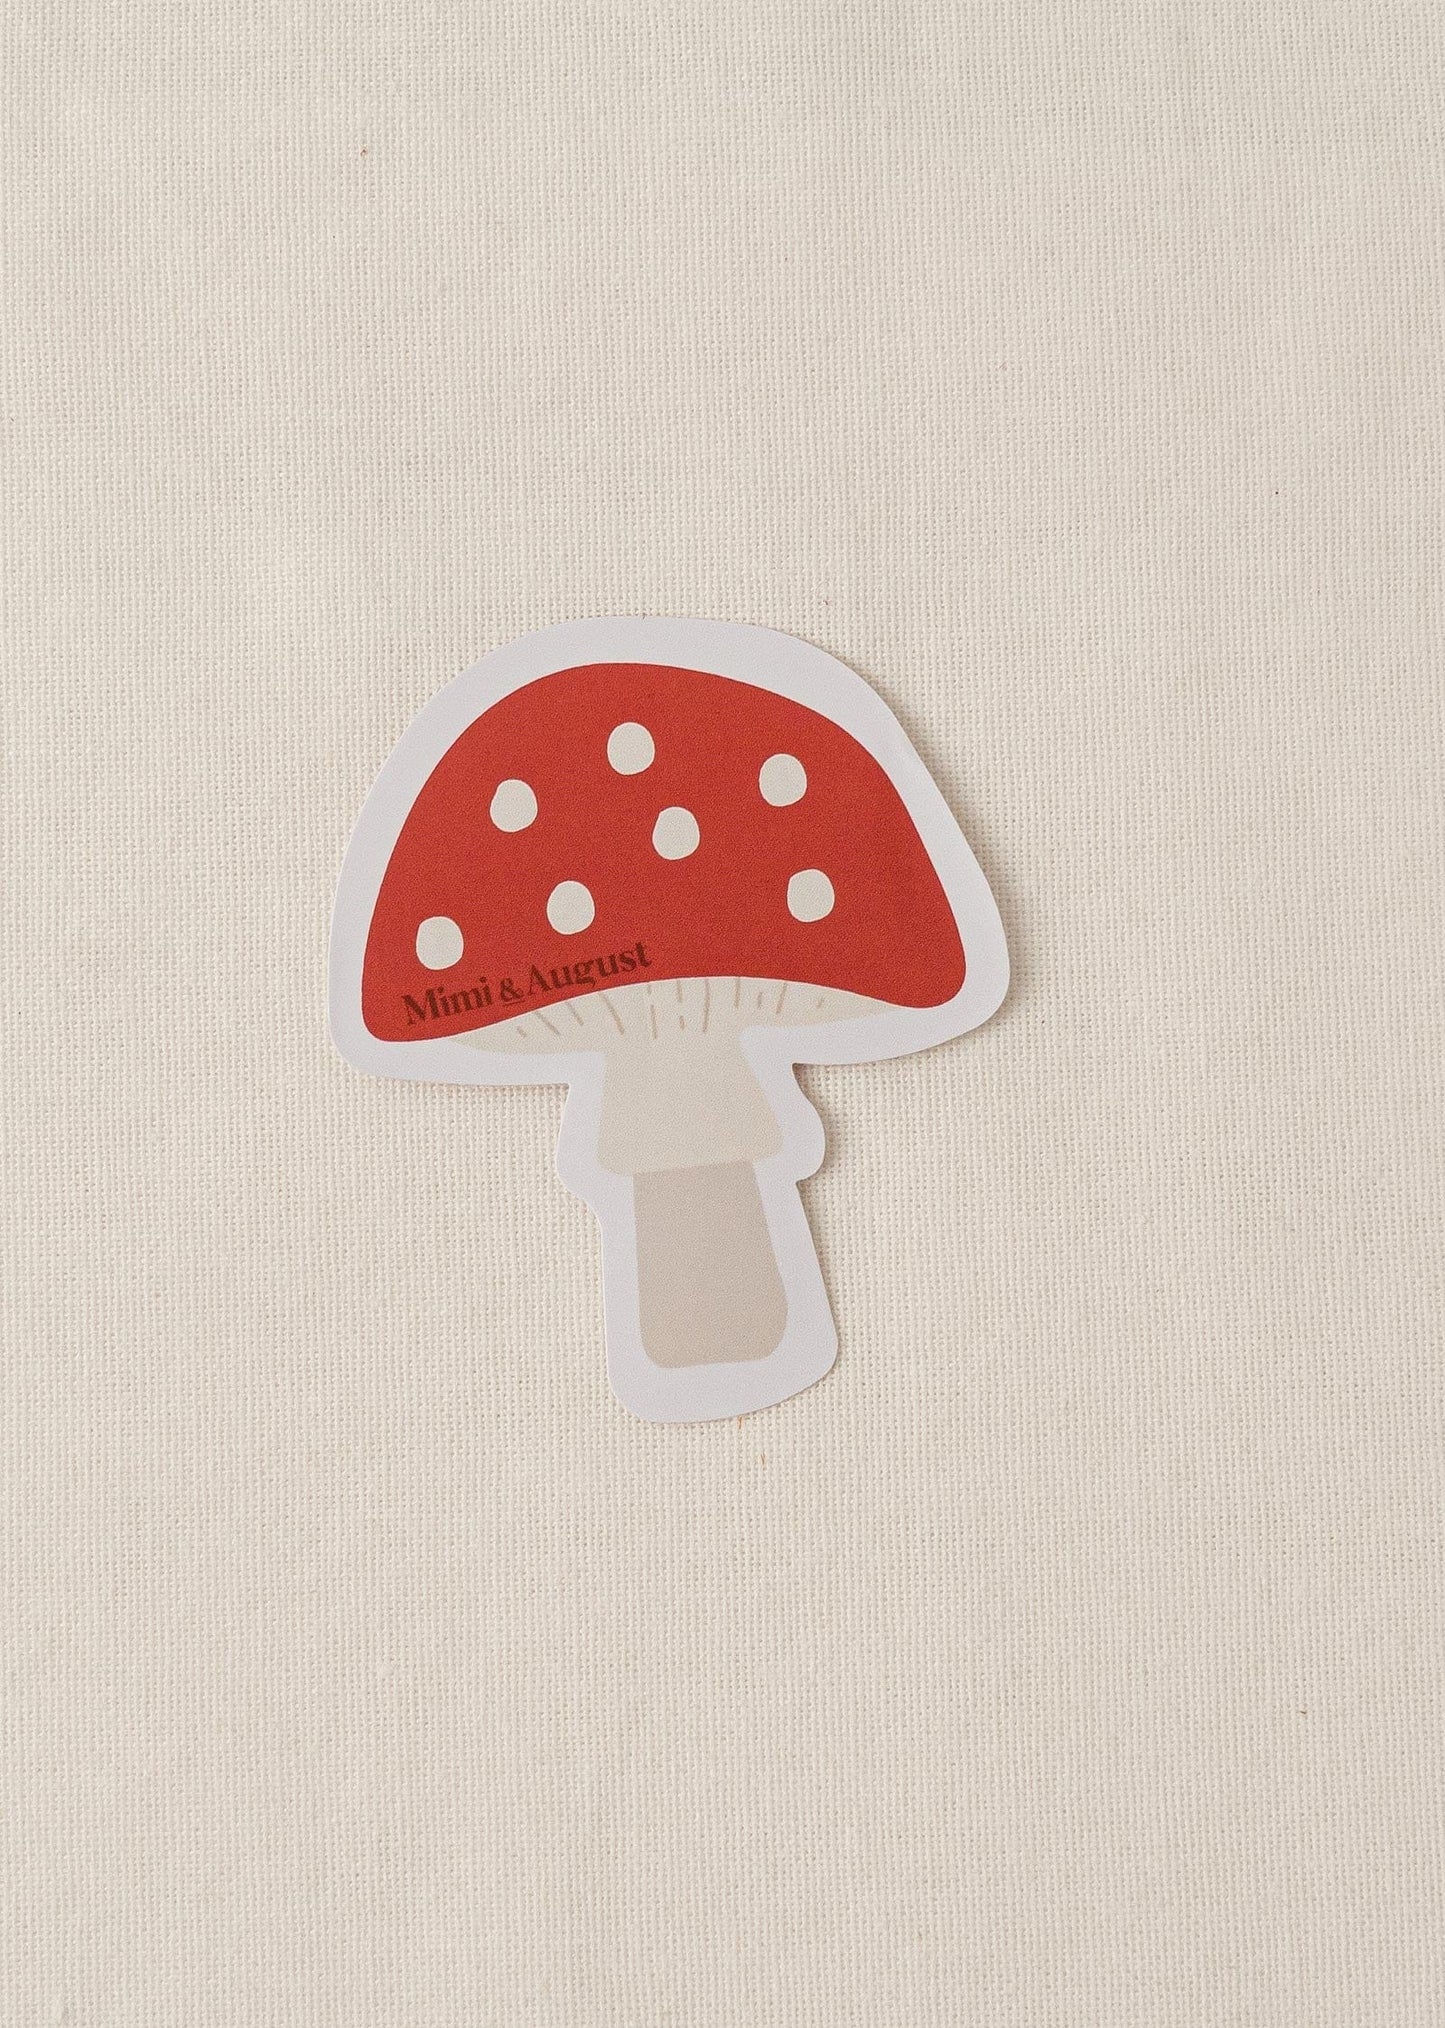 Mushroom - Vinyl Sticker